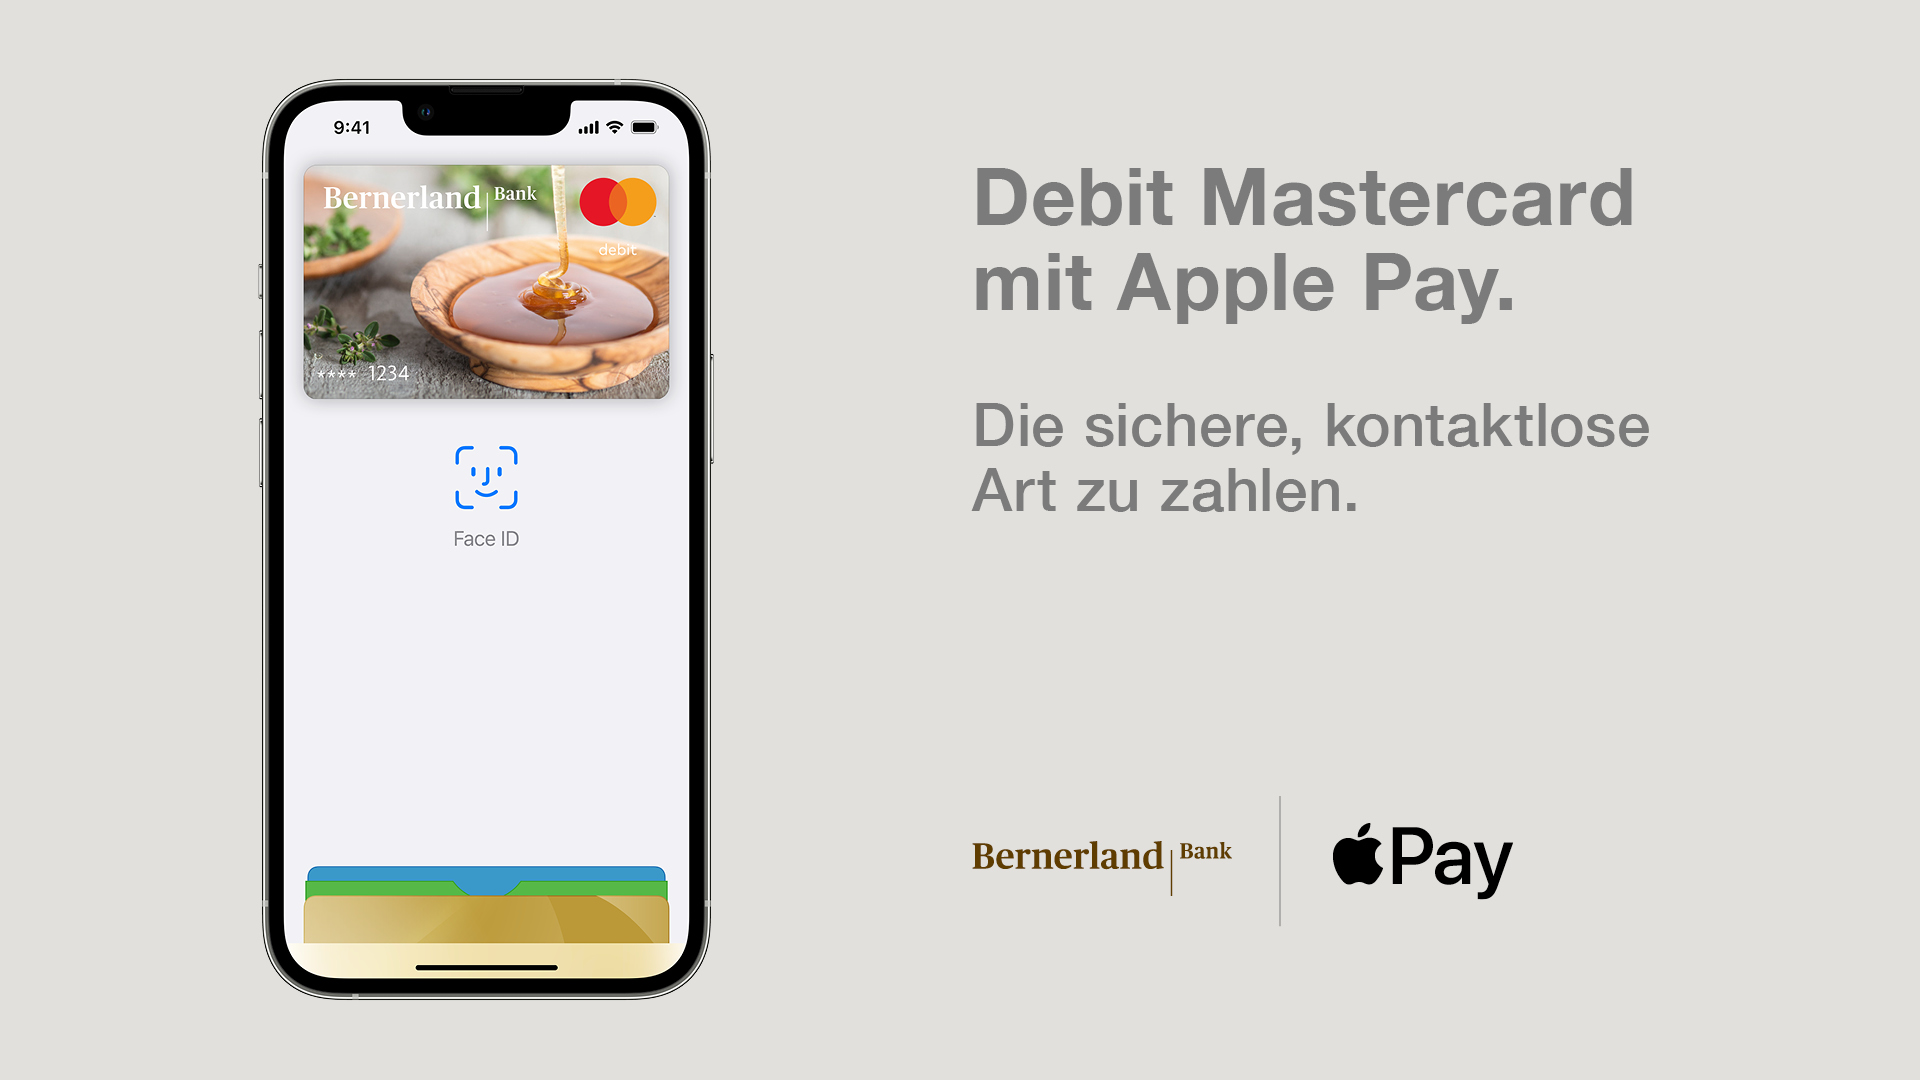 Apple Pay mit der Debit Mastercard der Bernerland Bank nutzen